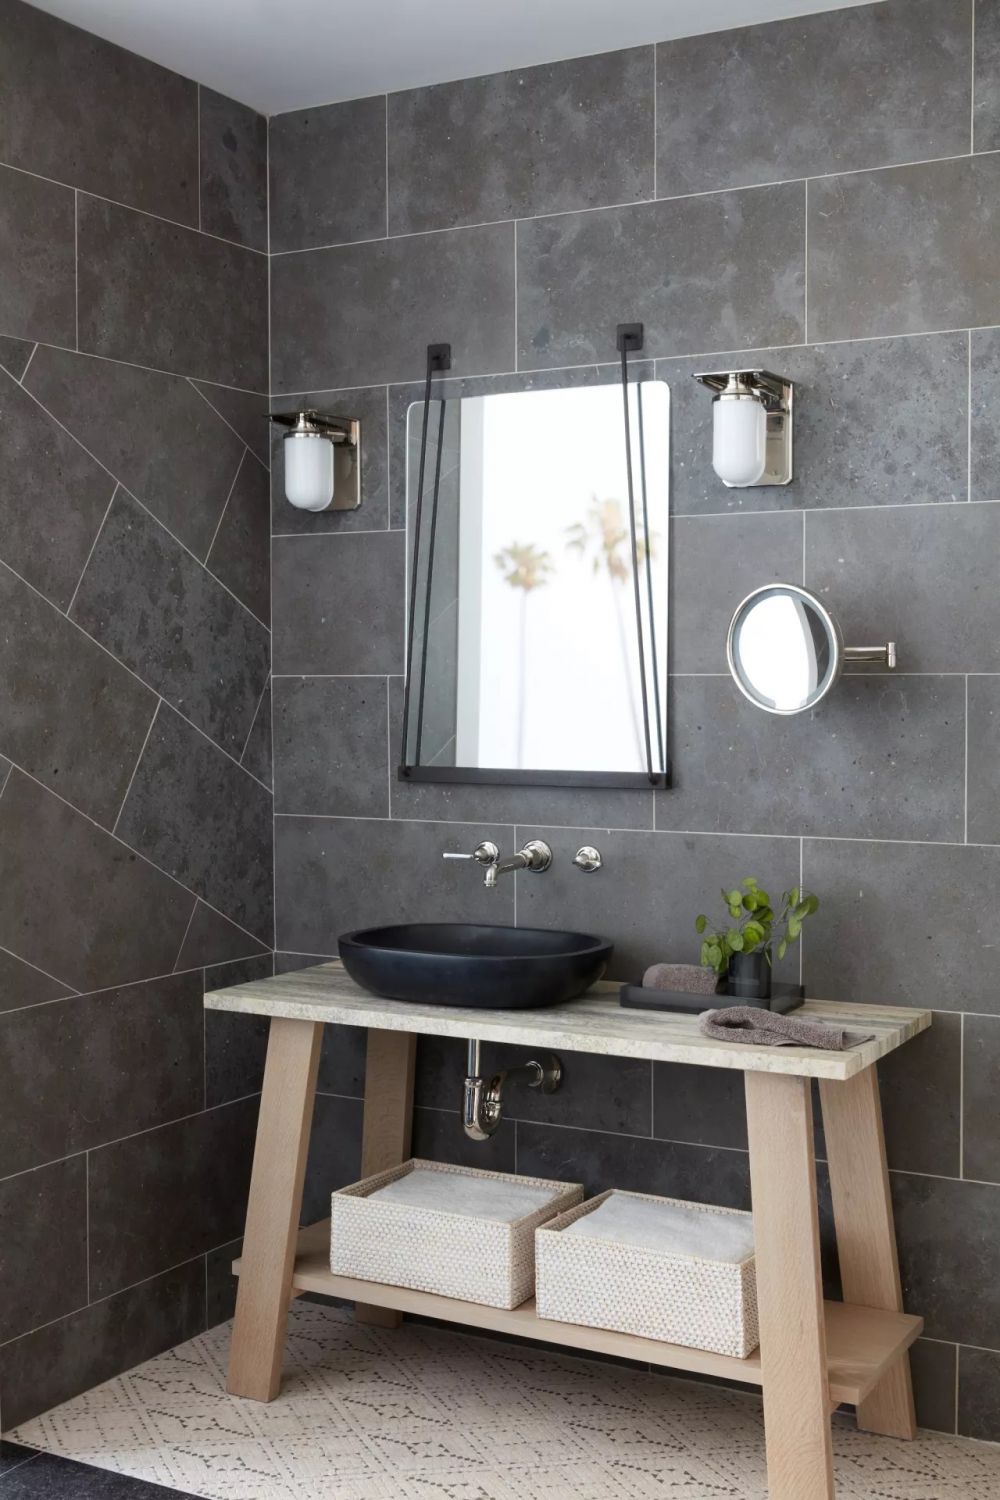 Крупноформатная серая плитка, которой облицованы стены от пола до потолка, наделяет ванную комнату целостным образом.